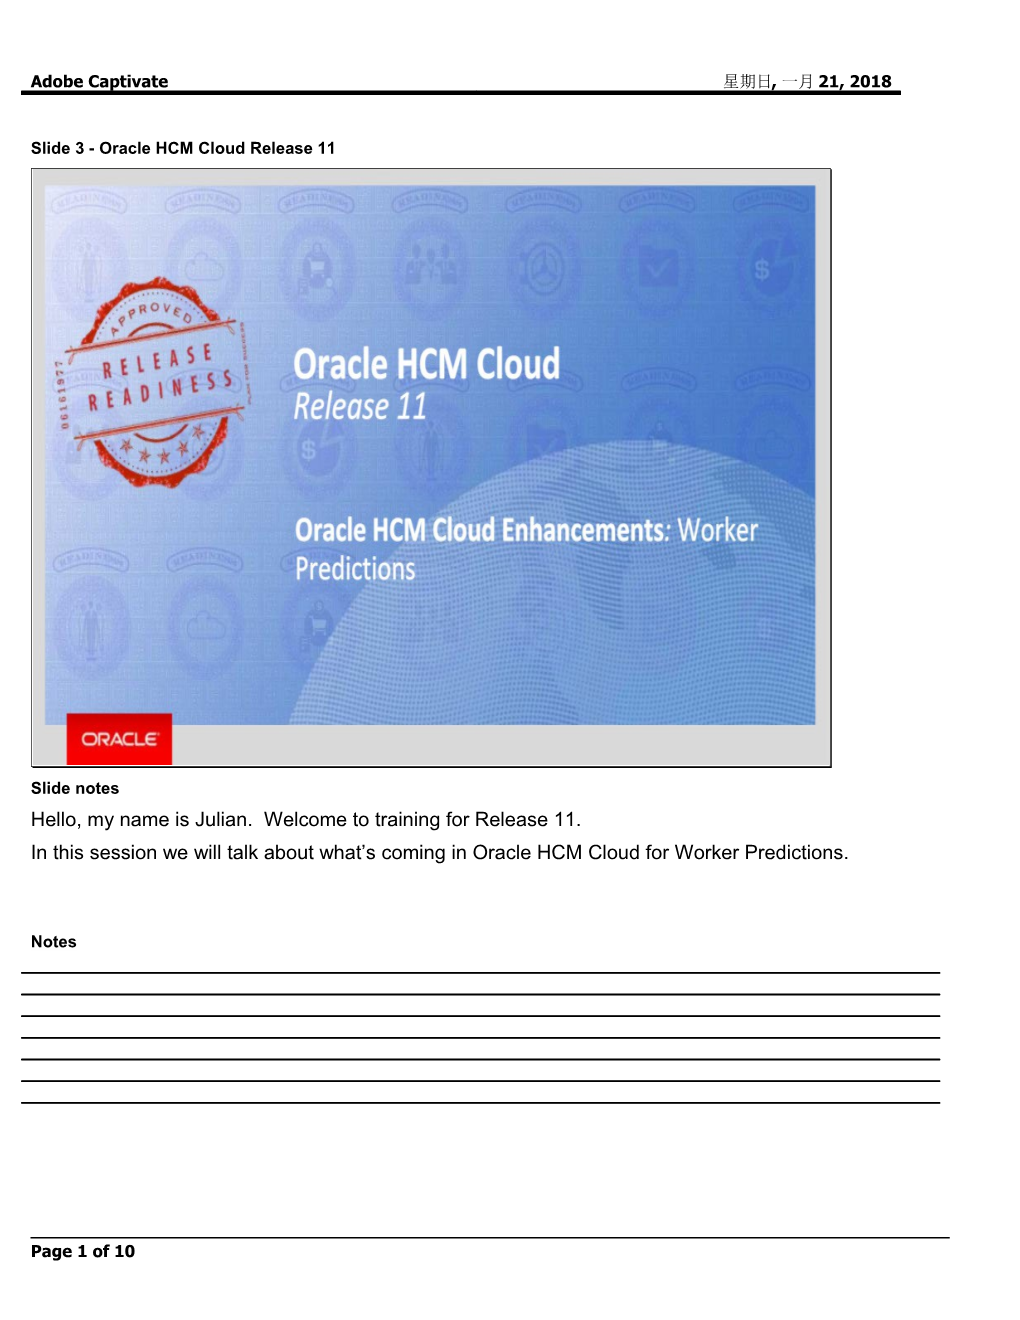 Slide 3 - Oracle HCM Cloud Release 11